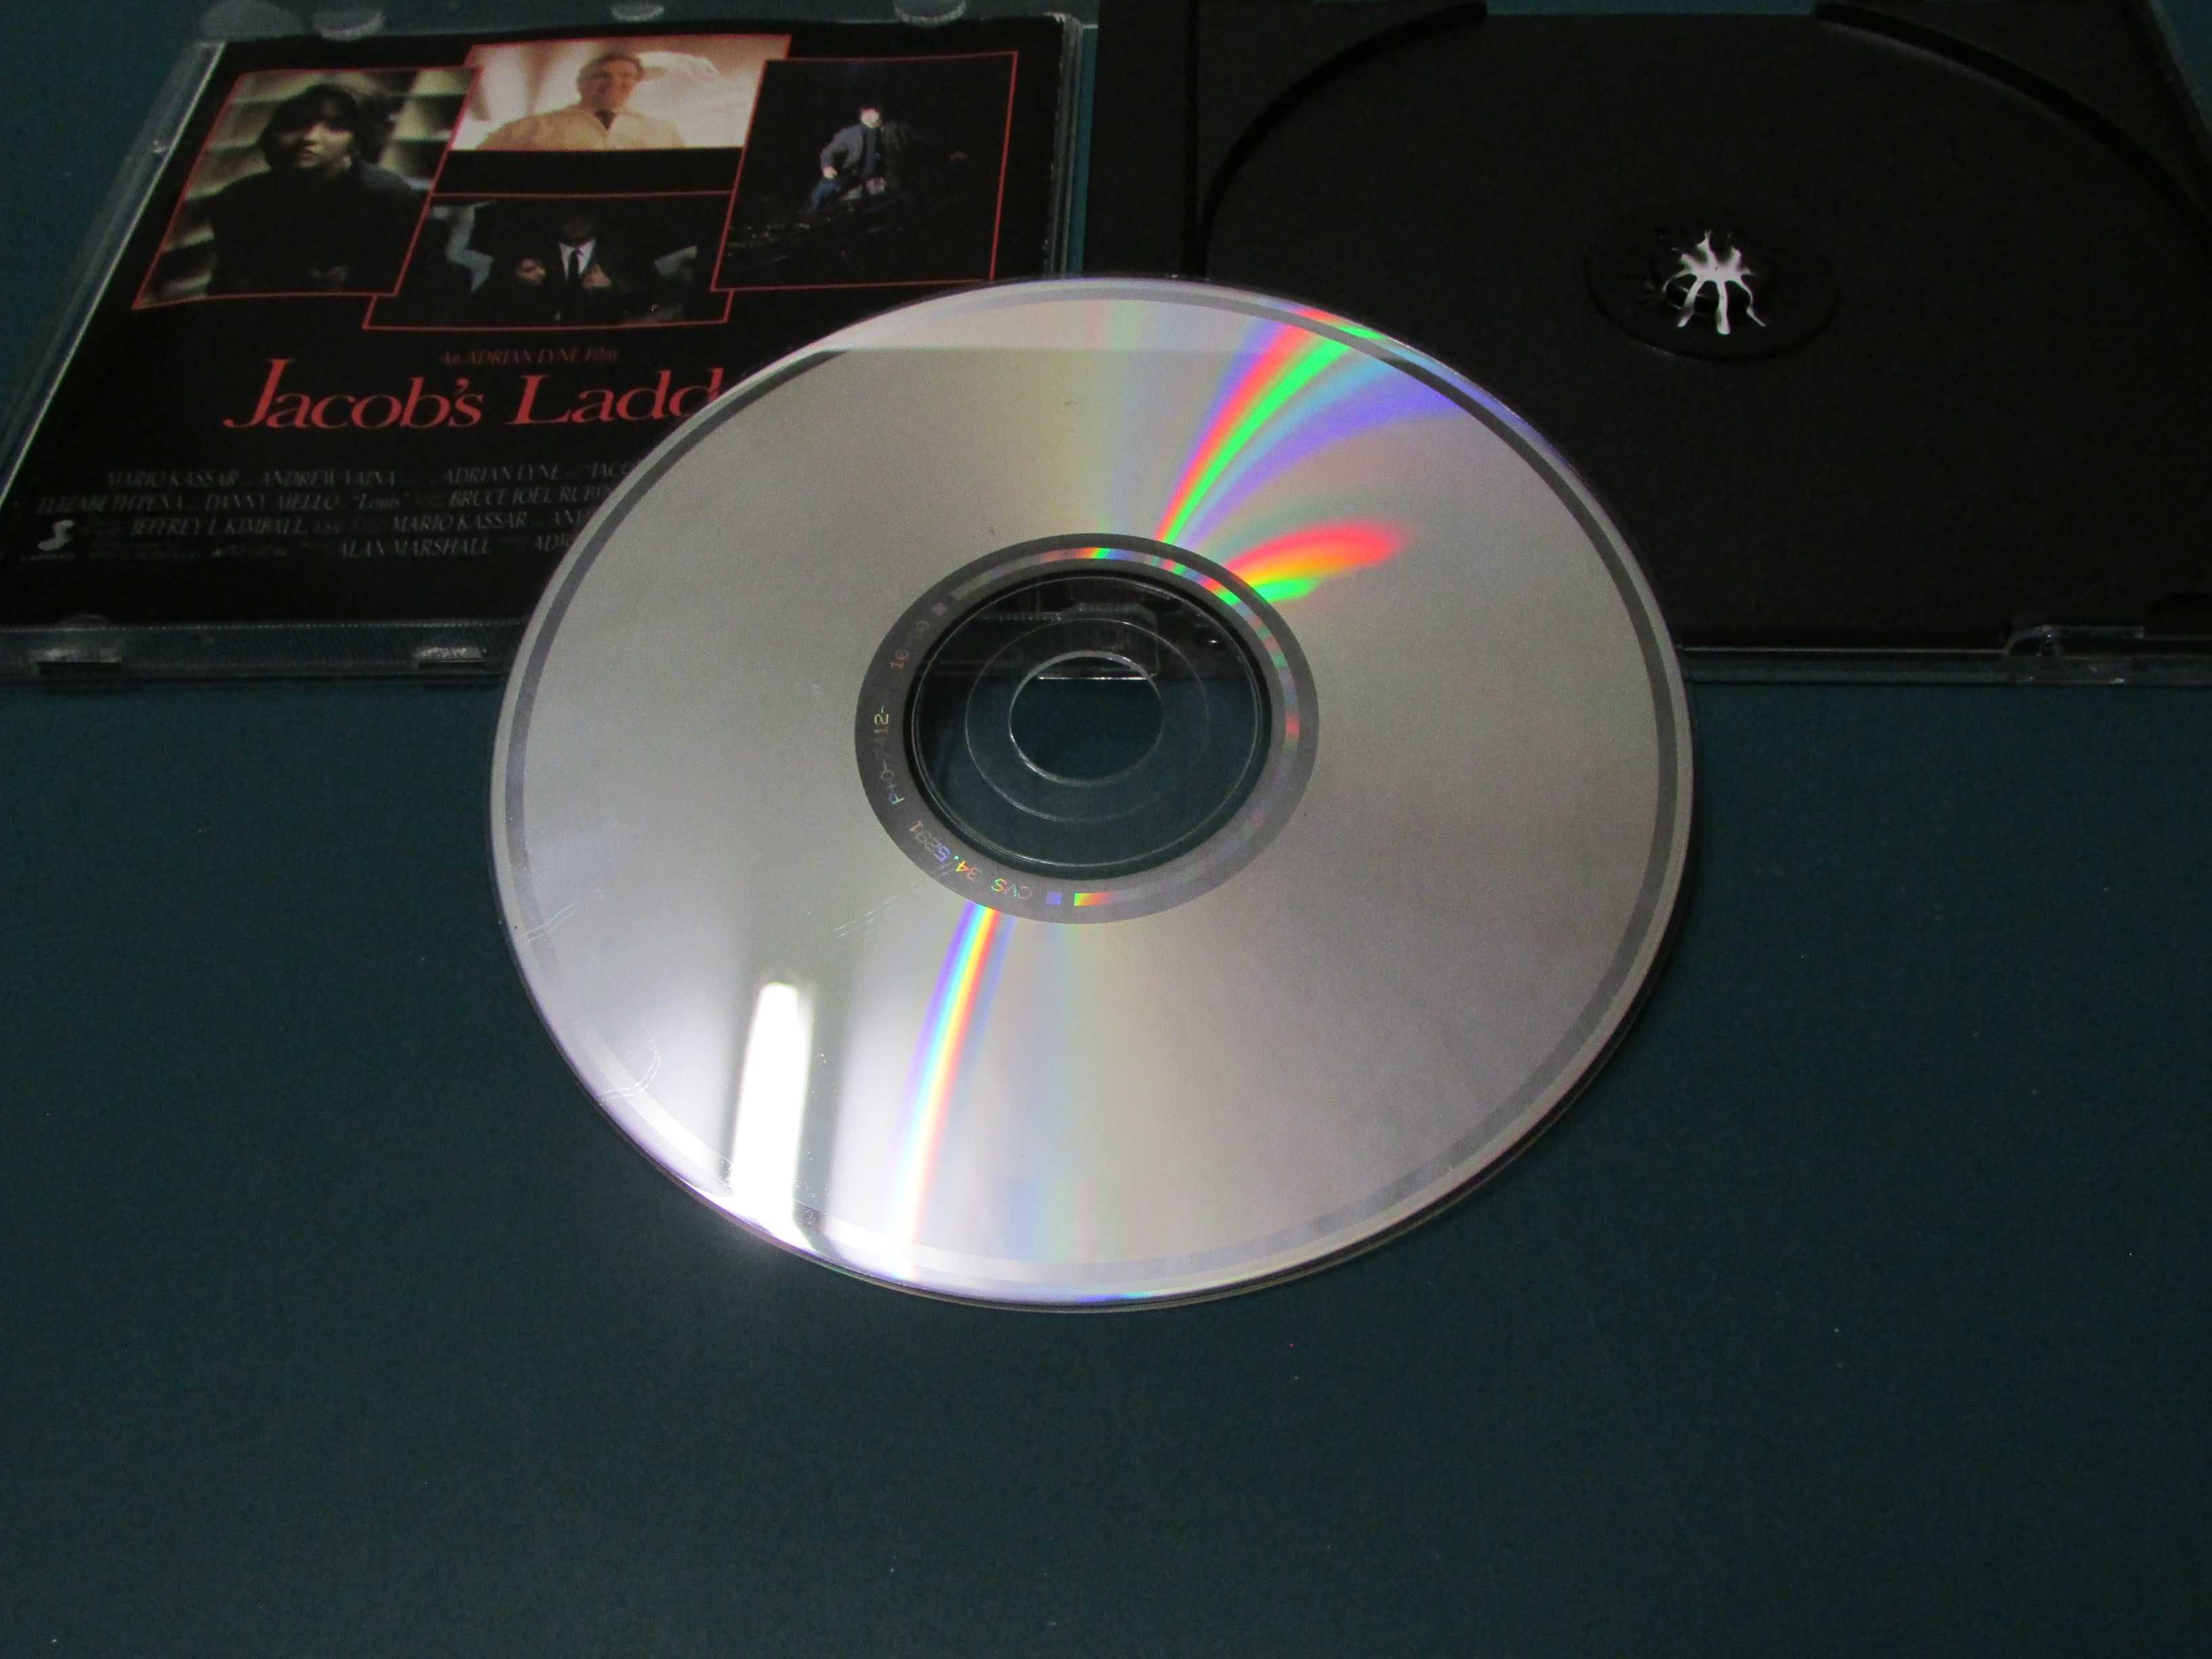 Maurice Jarre - Banda sonora original do filme "Jacob's Ladder" em CD